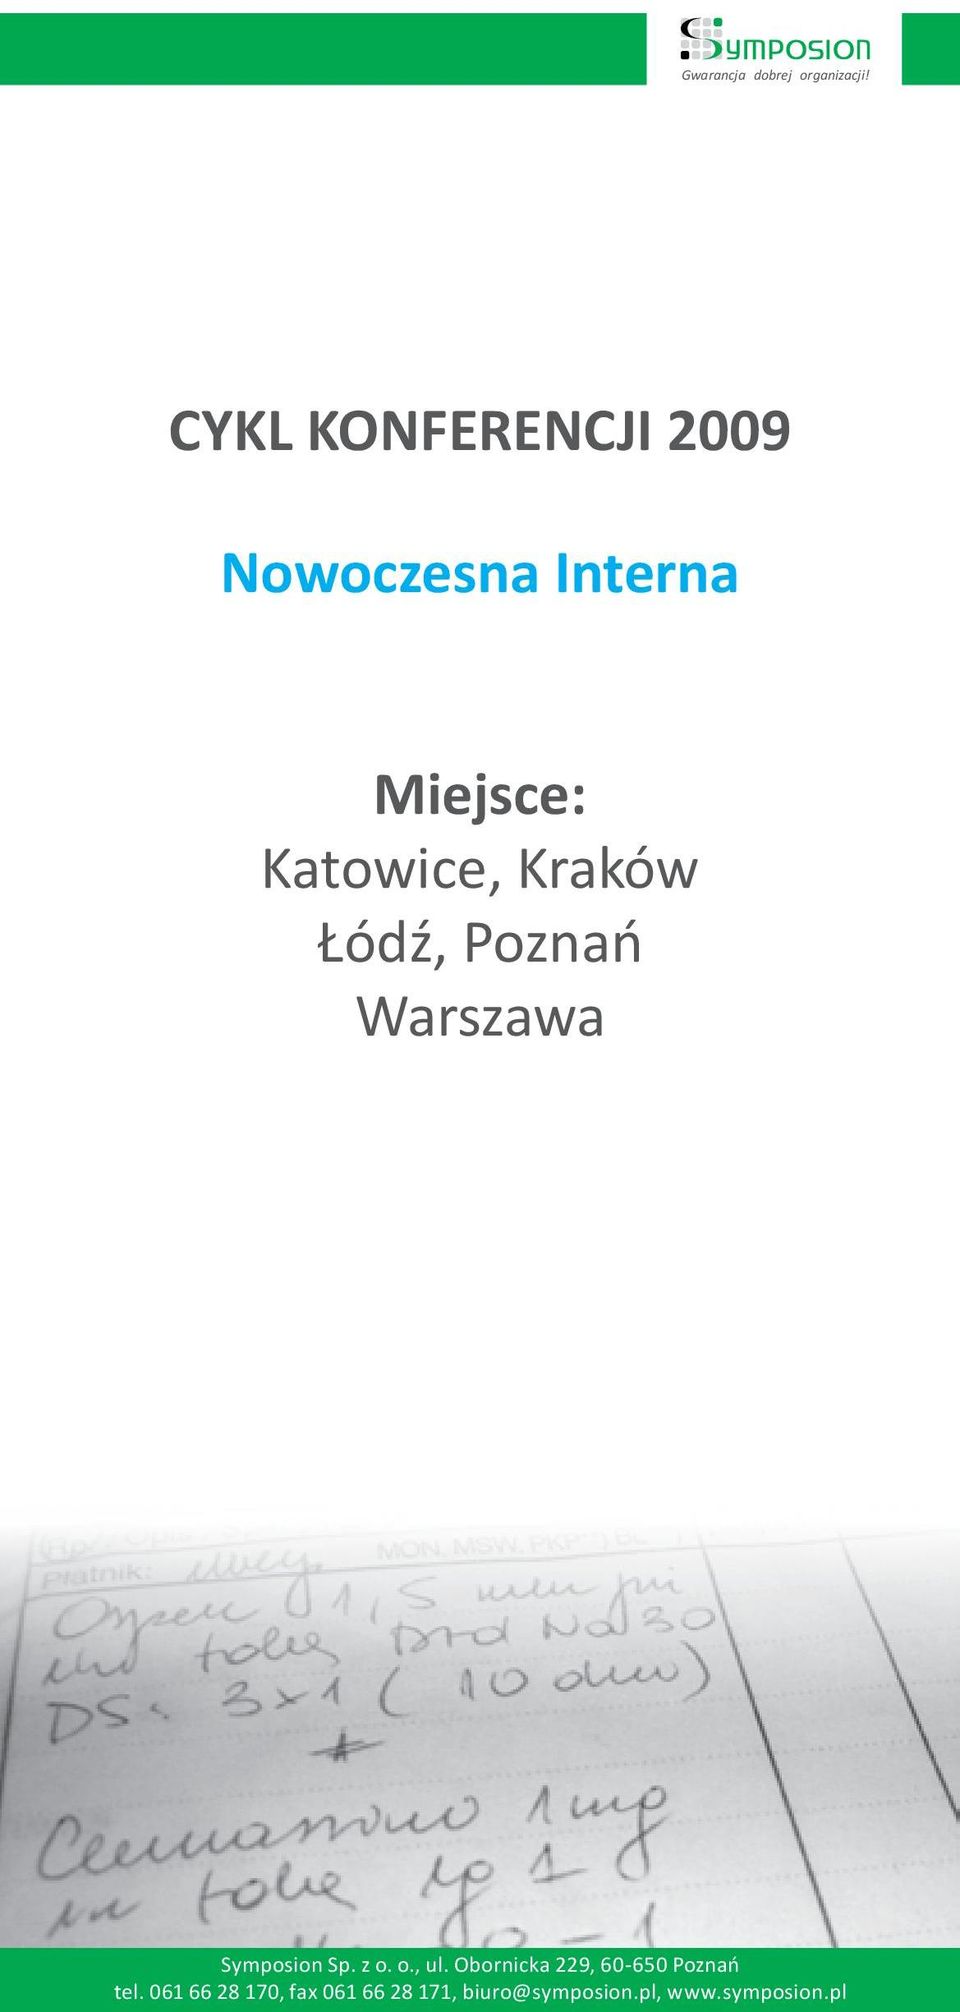 Katowice, Kraków